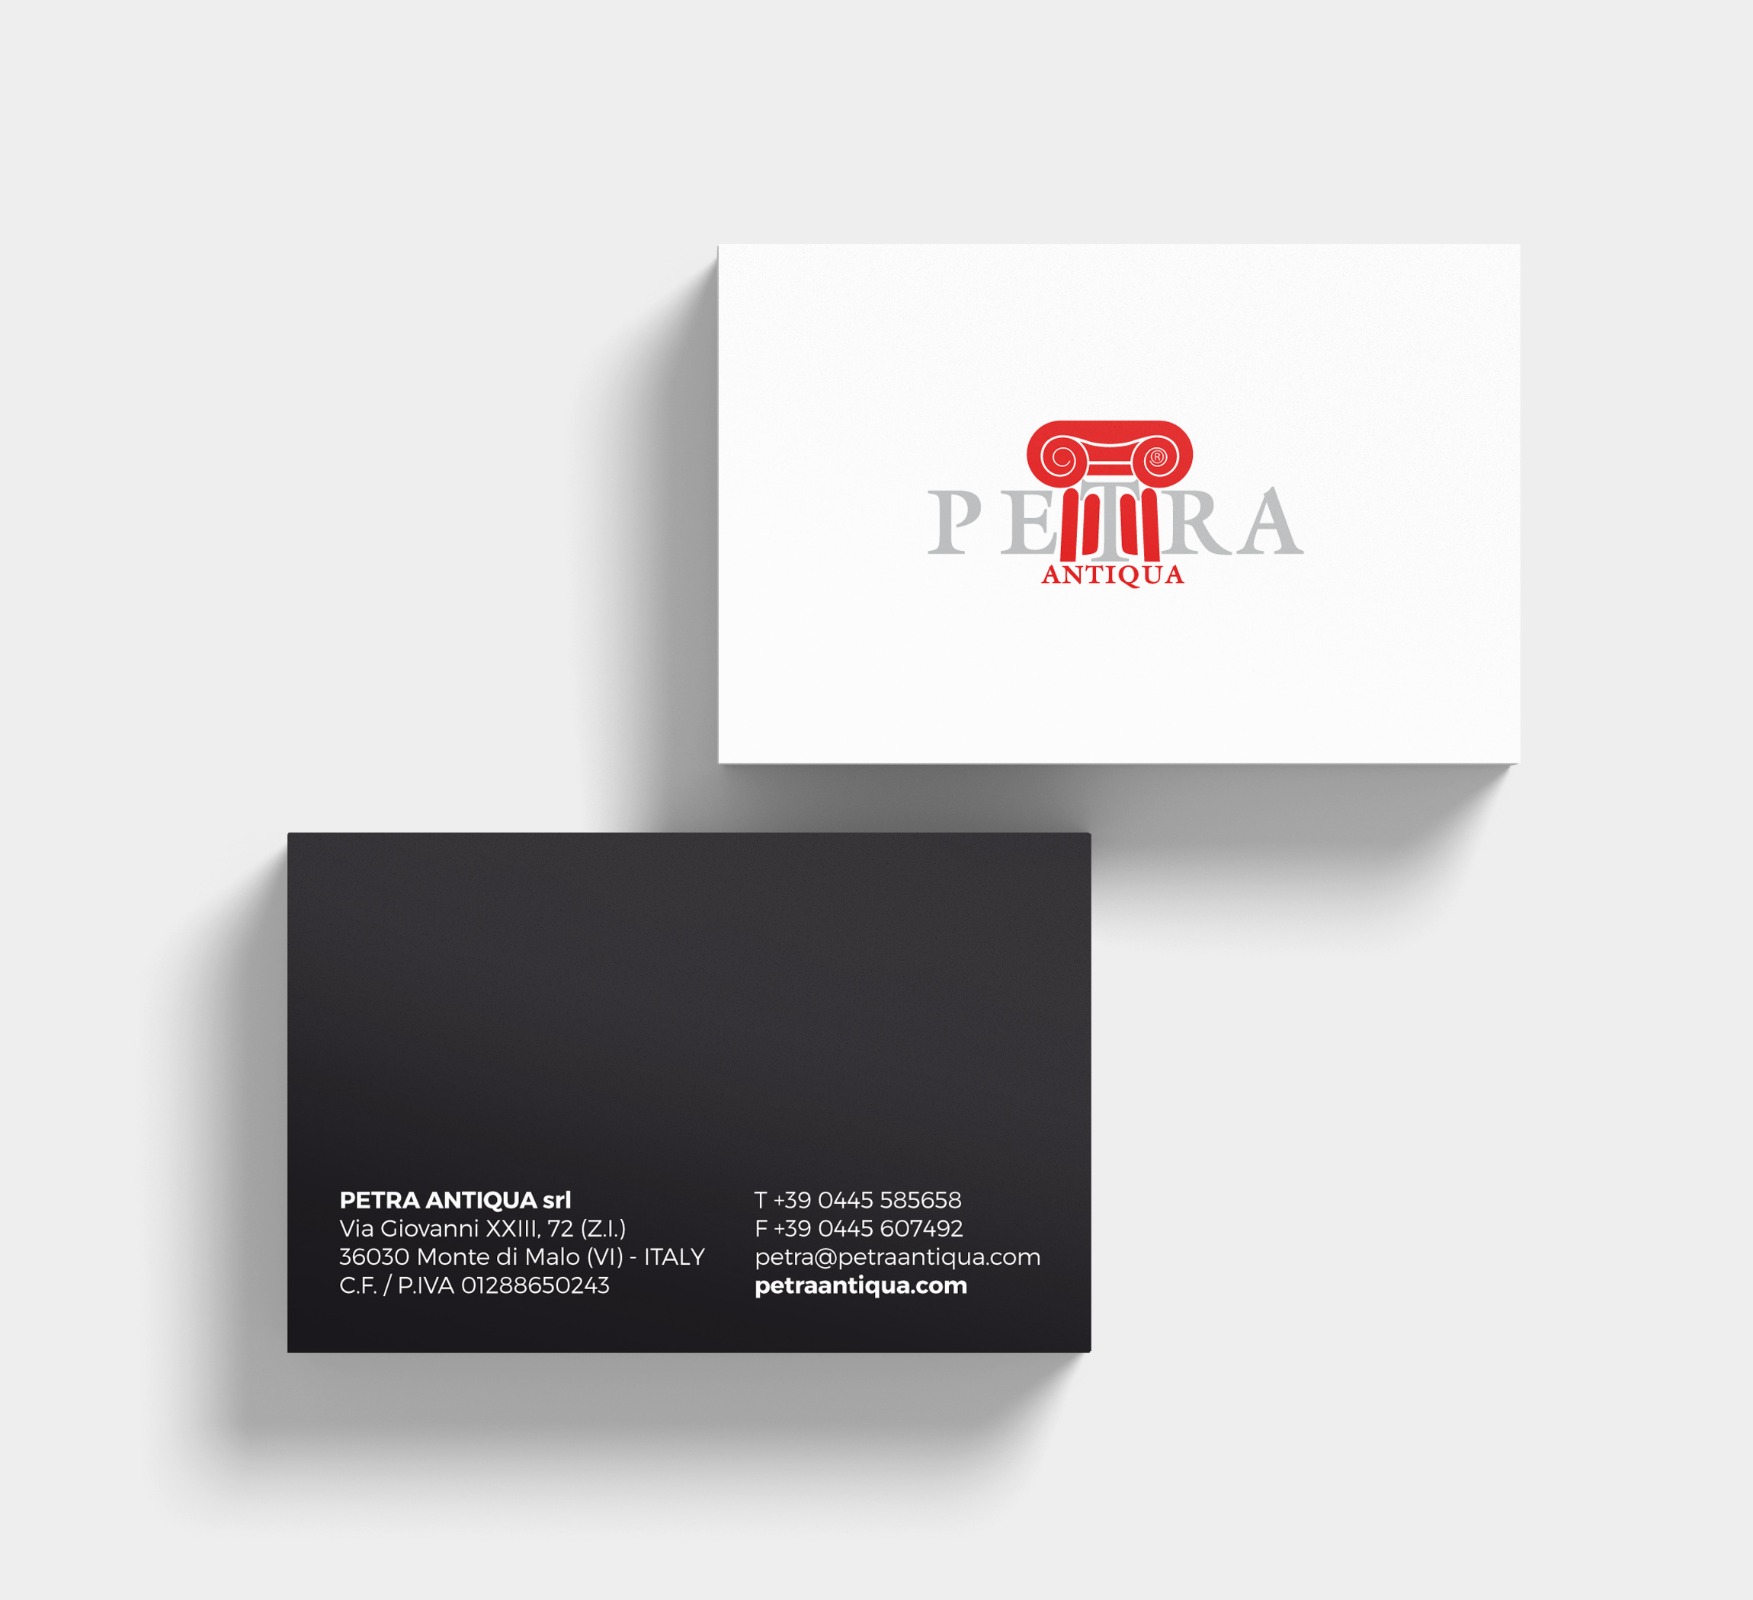 Petra Antiqua - Design to look and touch - Biglietto da visita